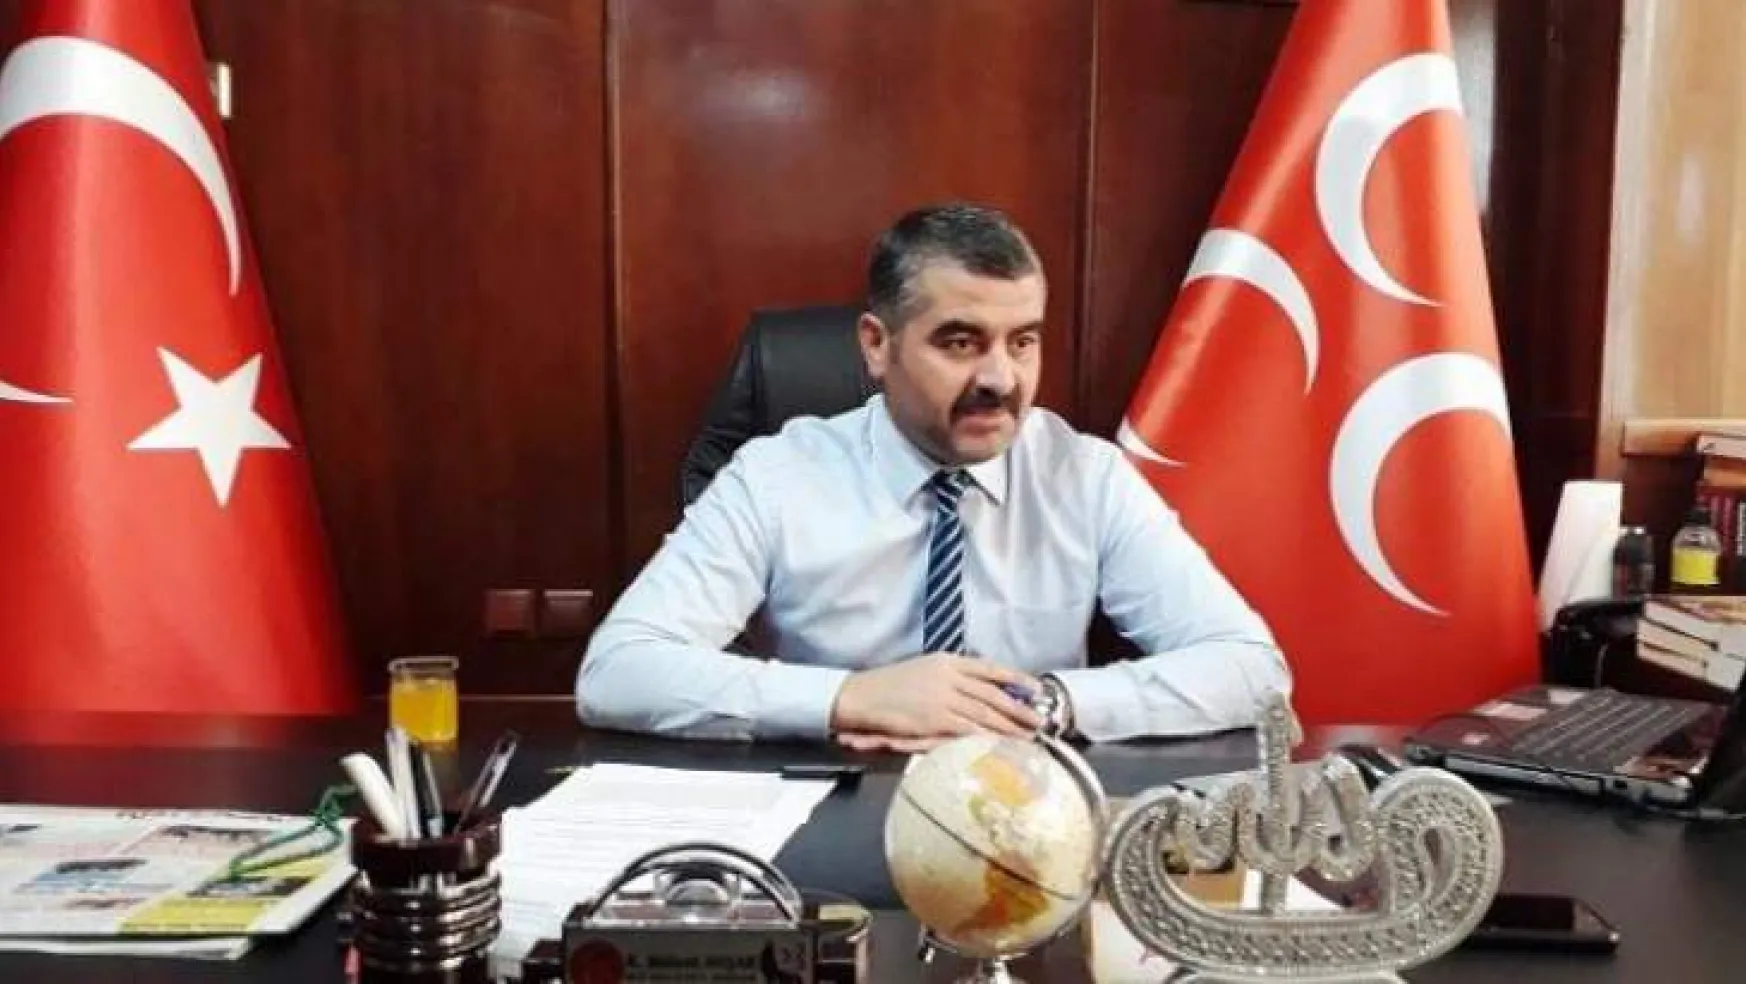 Avşar,'Ülkücüler Türk Milletinin çelikleşmiş iradesidir'